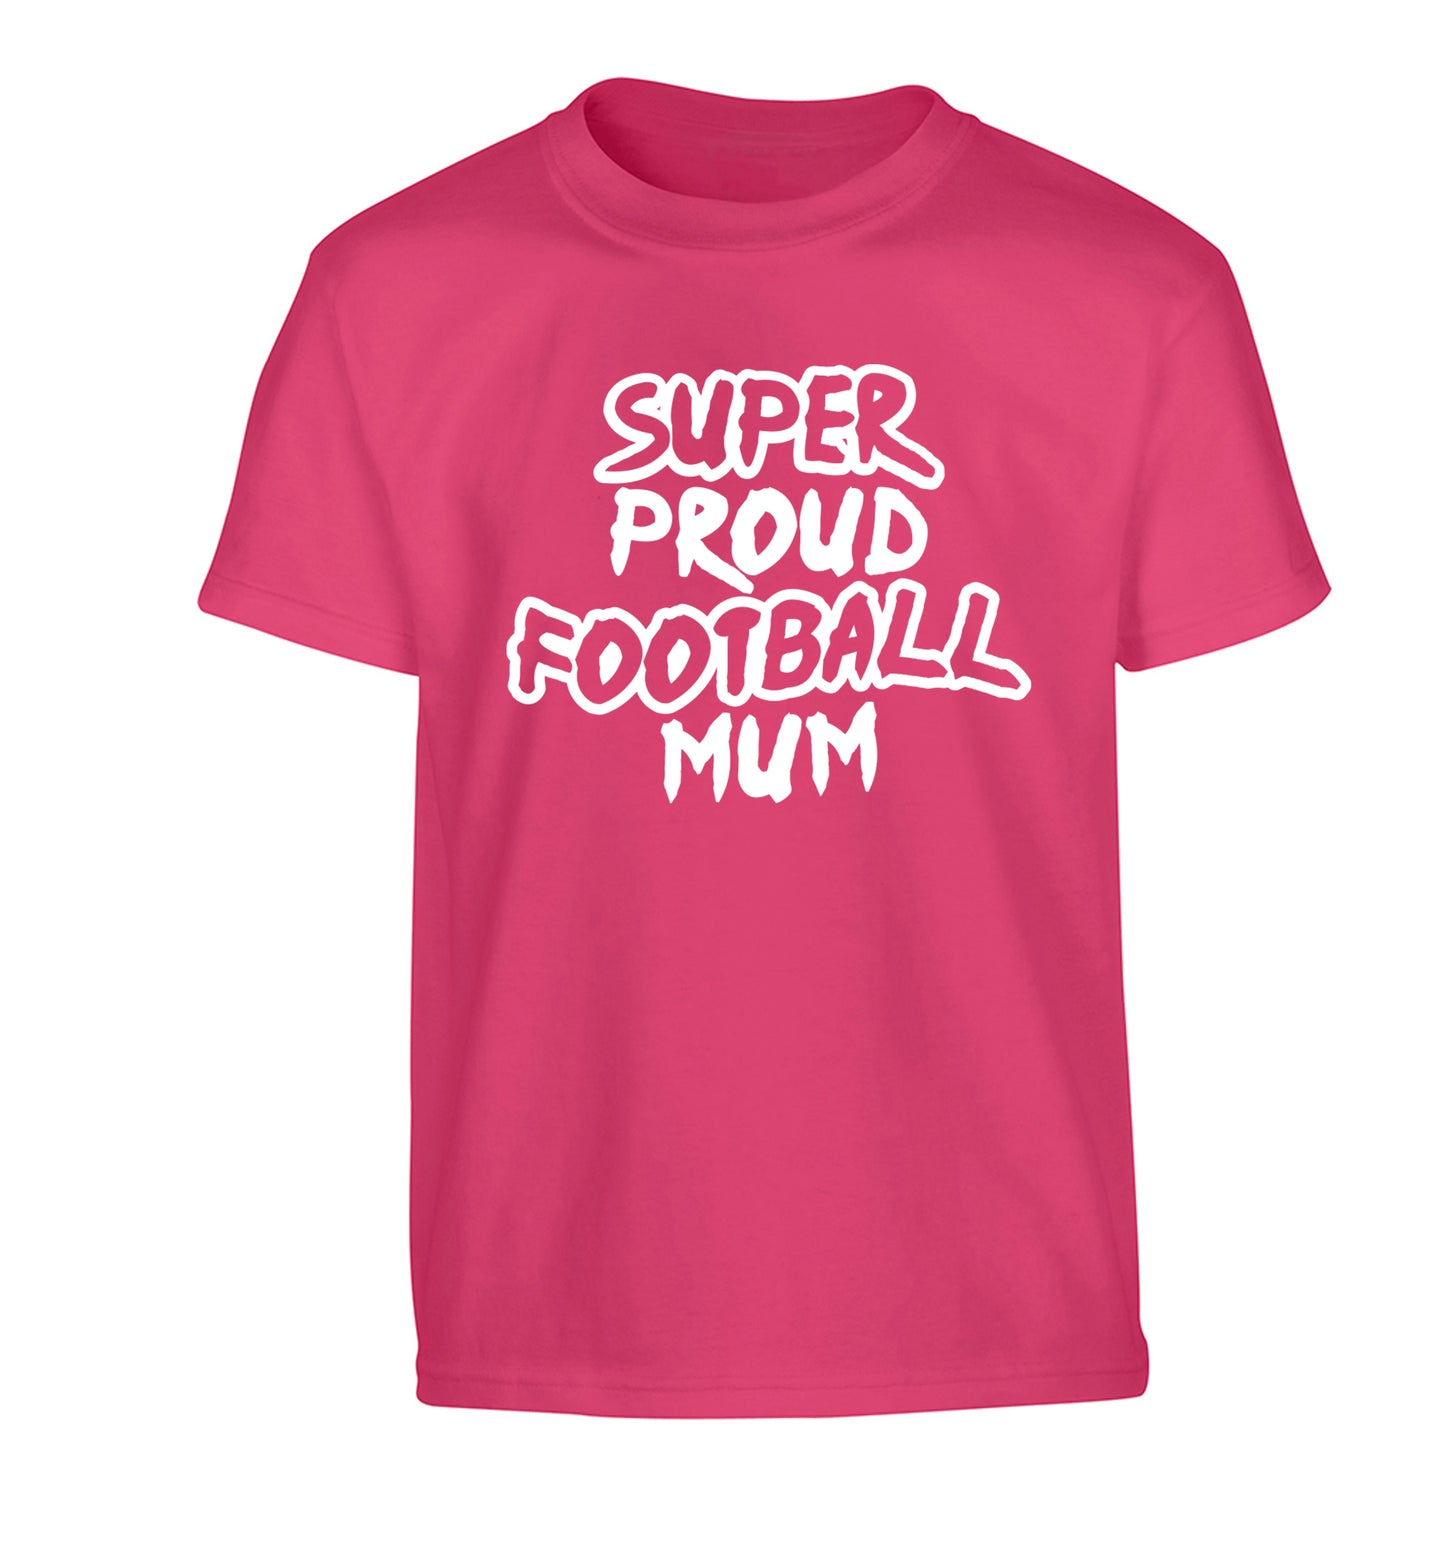 Super proud football mum Children's pink Tshirt 12-14 Years